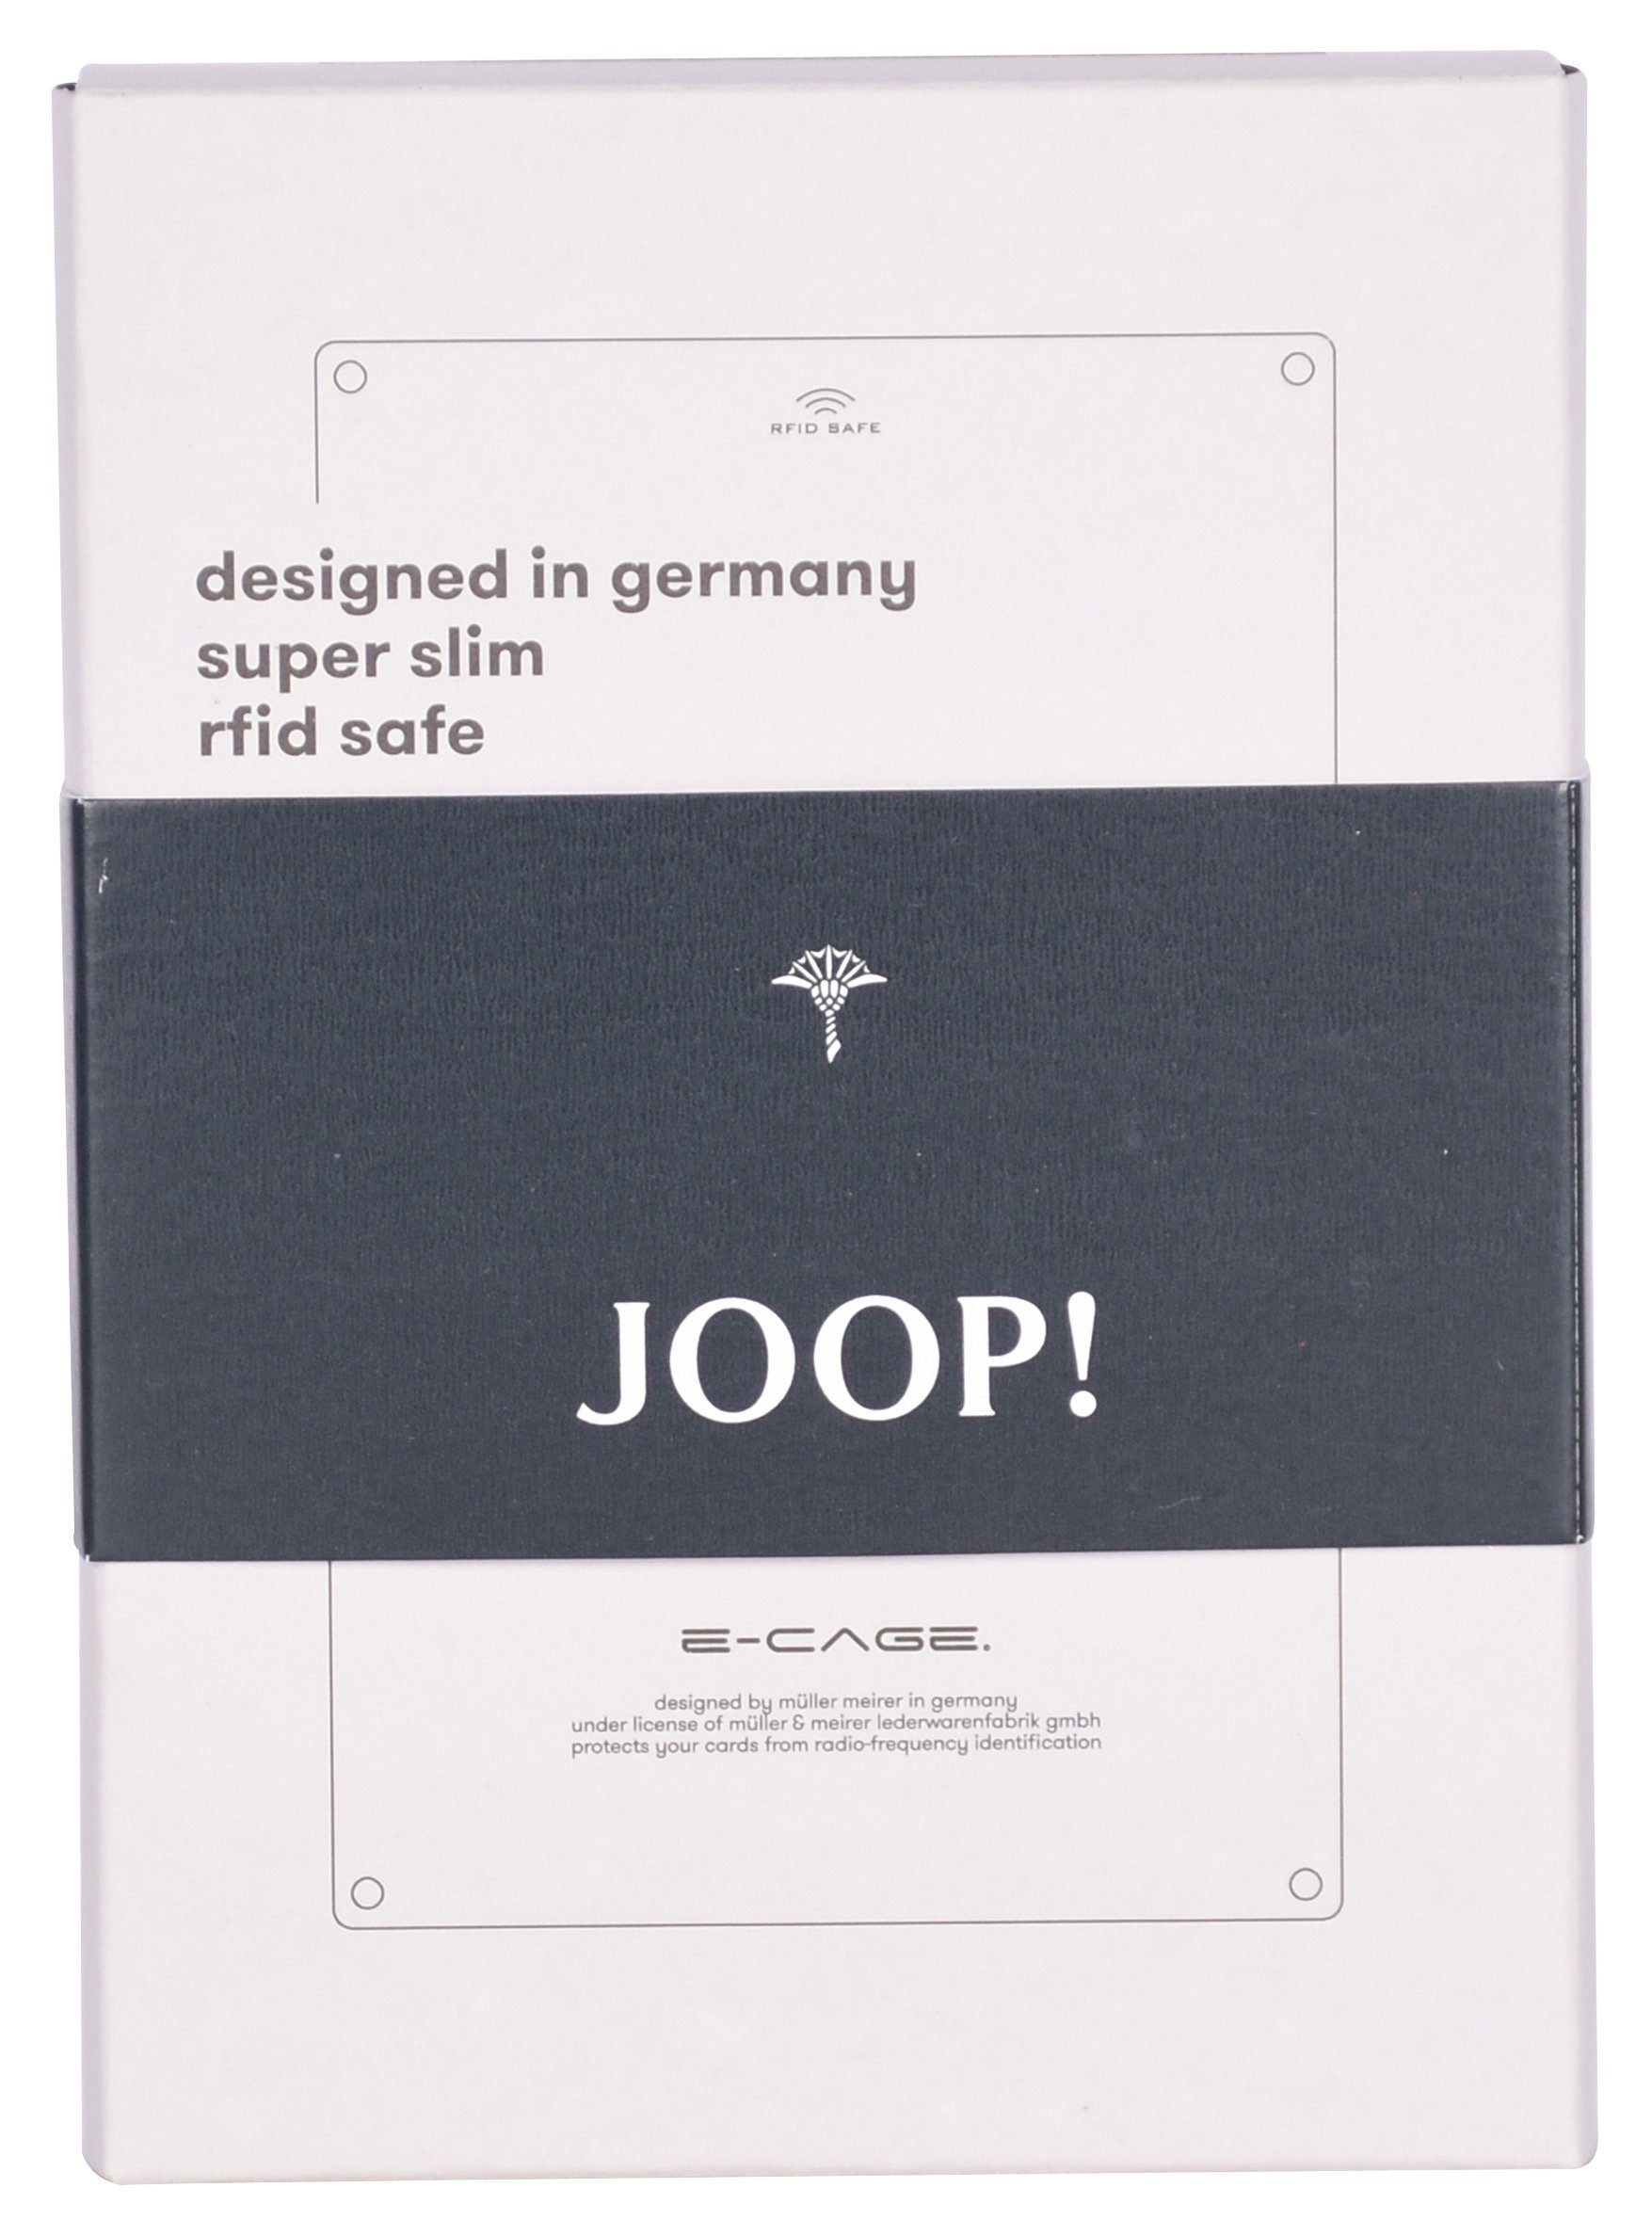 Joop! Kartenetui mit fano c-two darkbrown sv8, e-cage RFID Schutz